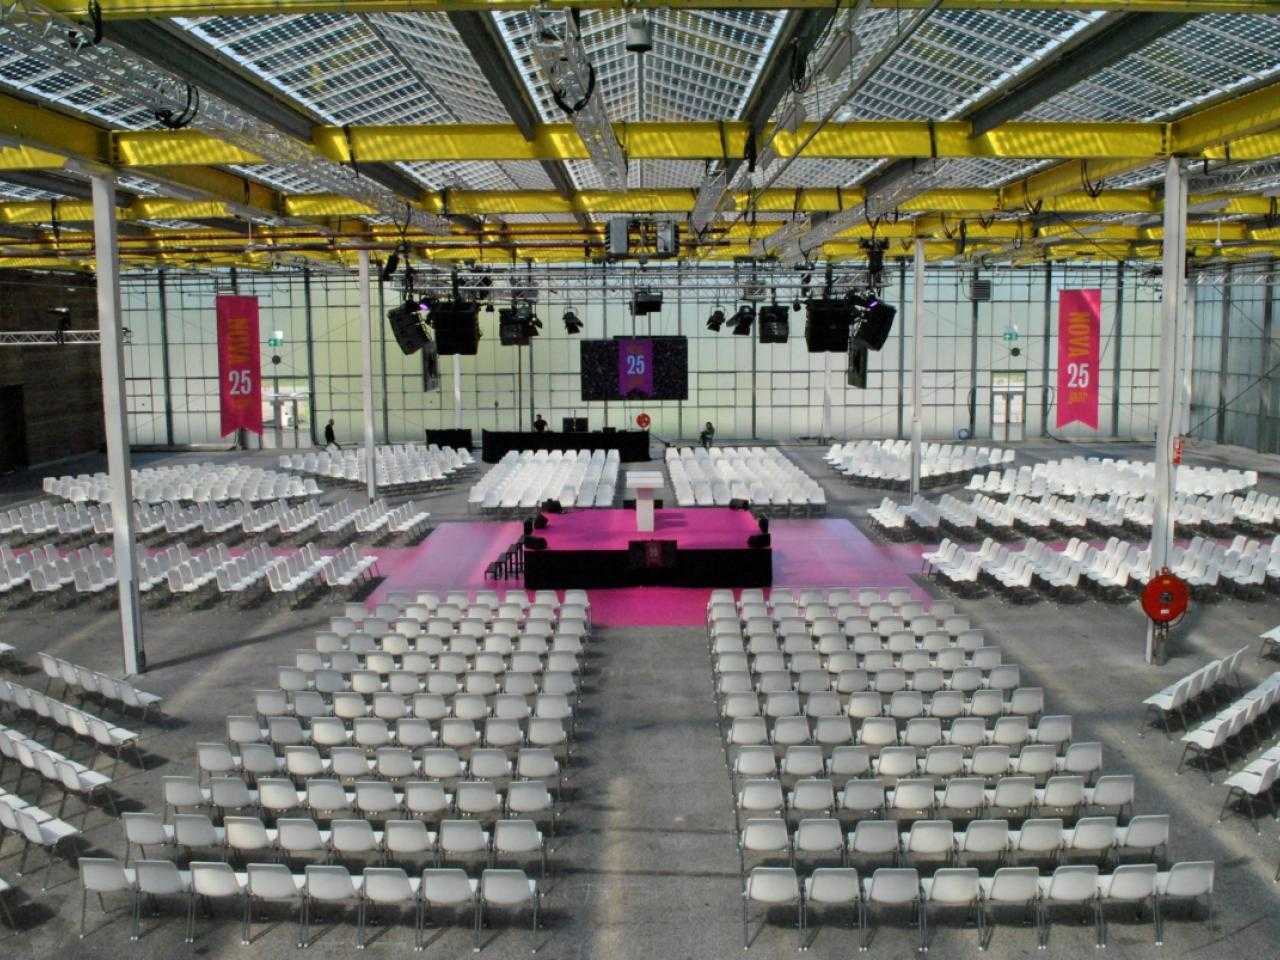 Conference setup inside Expo Haarlemmermeer